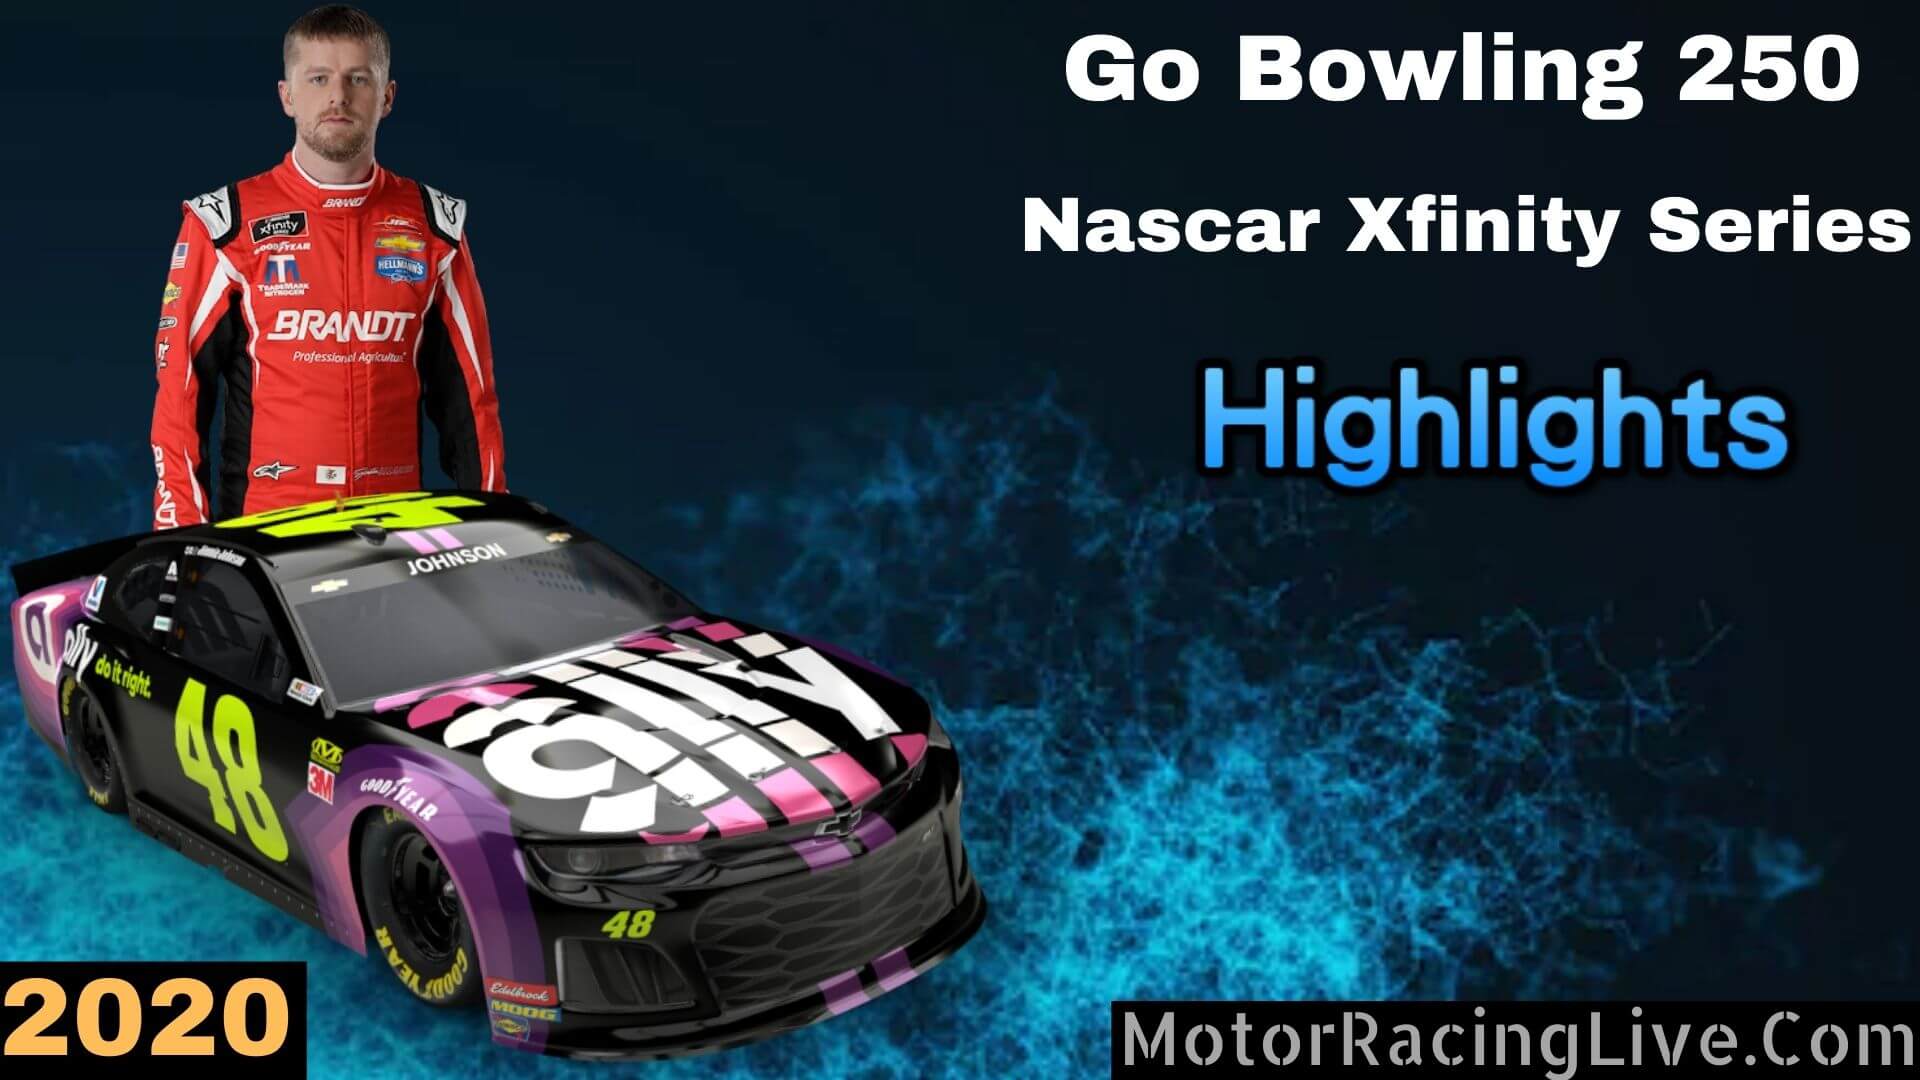 Go Bowling 250 Highlights Nascar Xfinity Series 2020